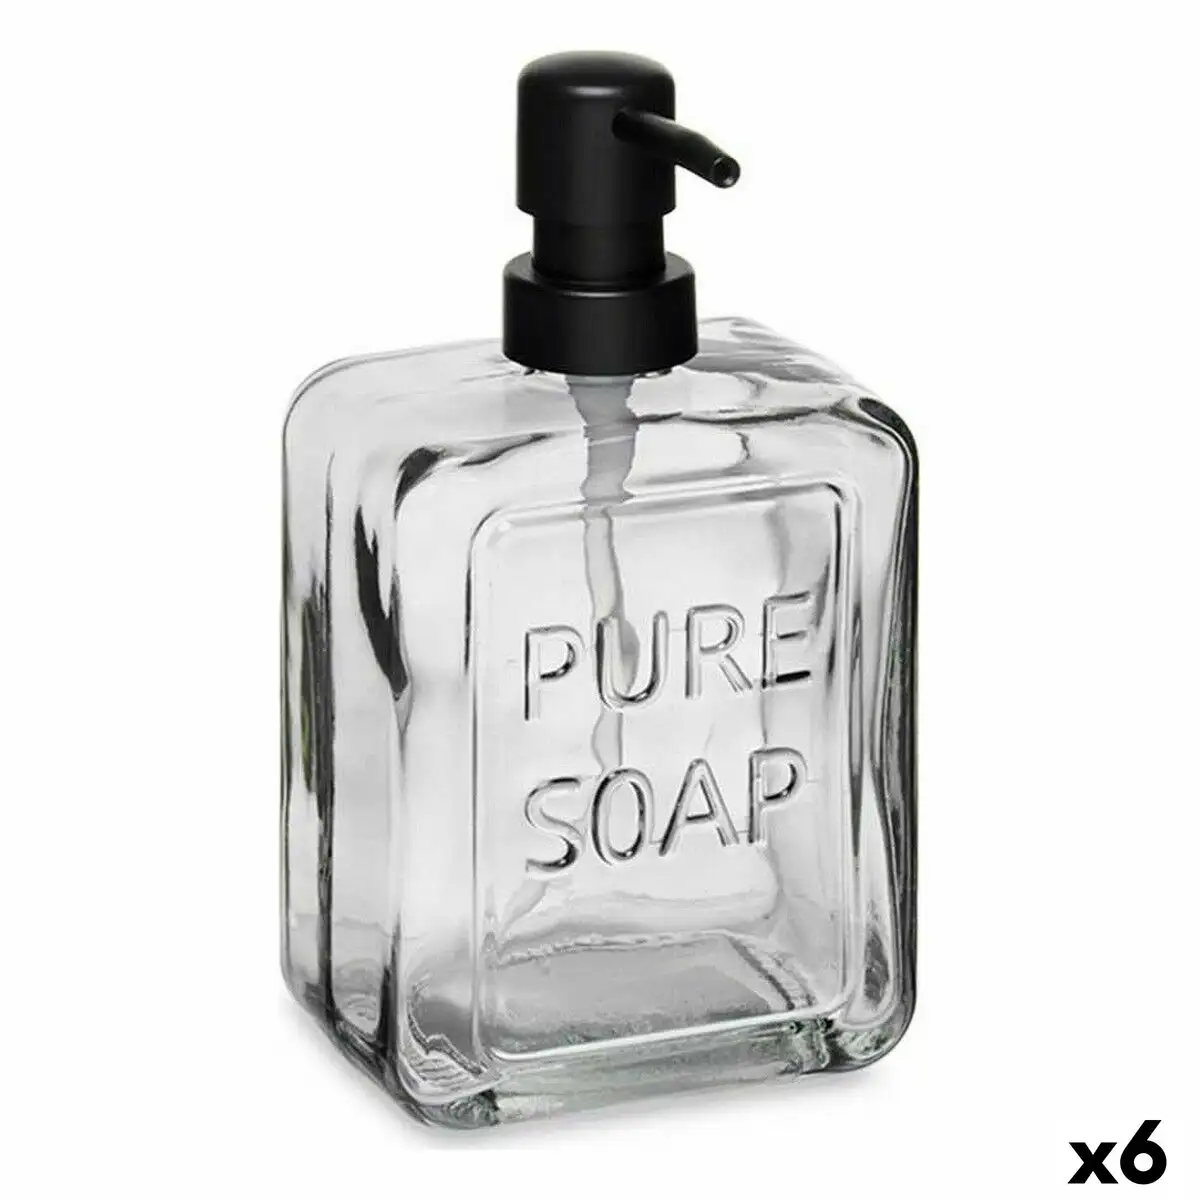 Distributeur de savon pure soap verre noir plastique 570 ml 6 unites _6785. DIAYTAR SENEGAL - Où Choisir Devient une Découverte. Explorez notre boutique en ligne et trouvez des articles qui vous surprennent et vous ravissent à chaque clic.